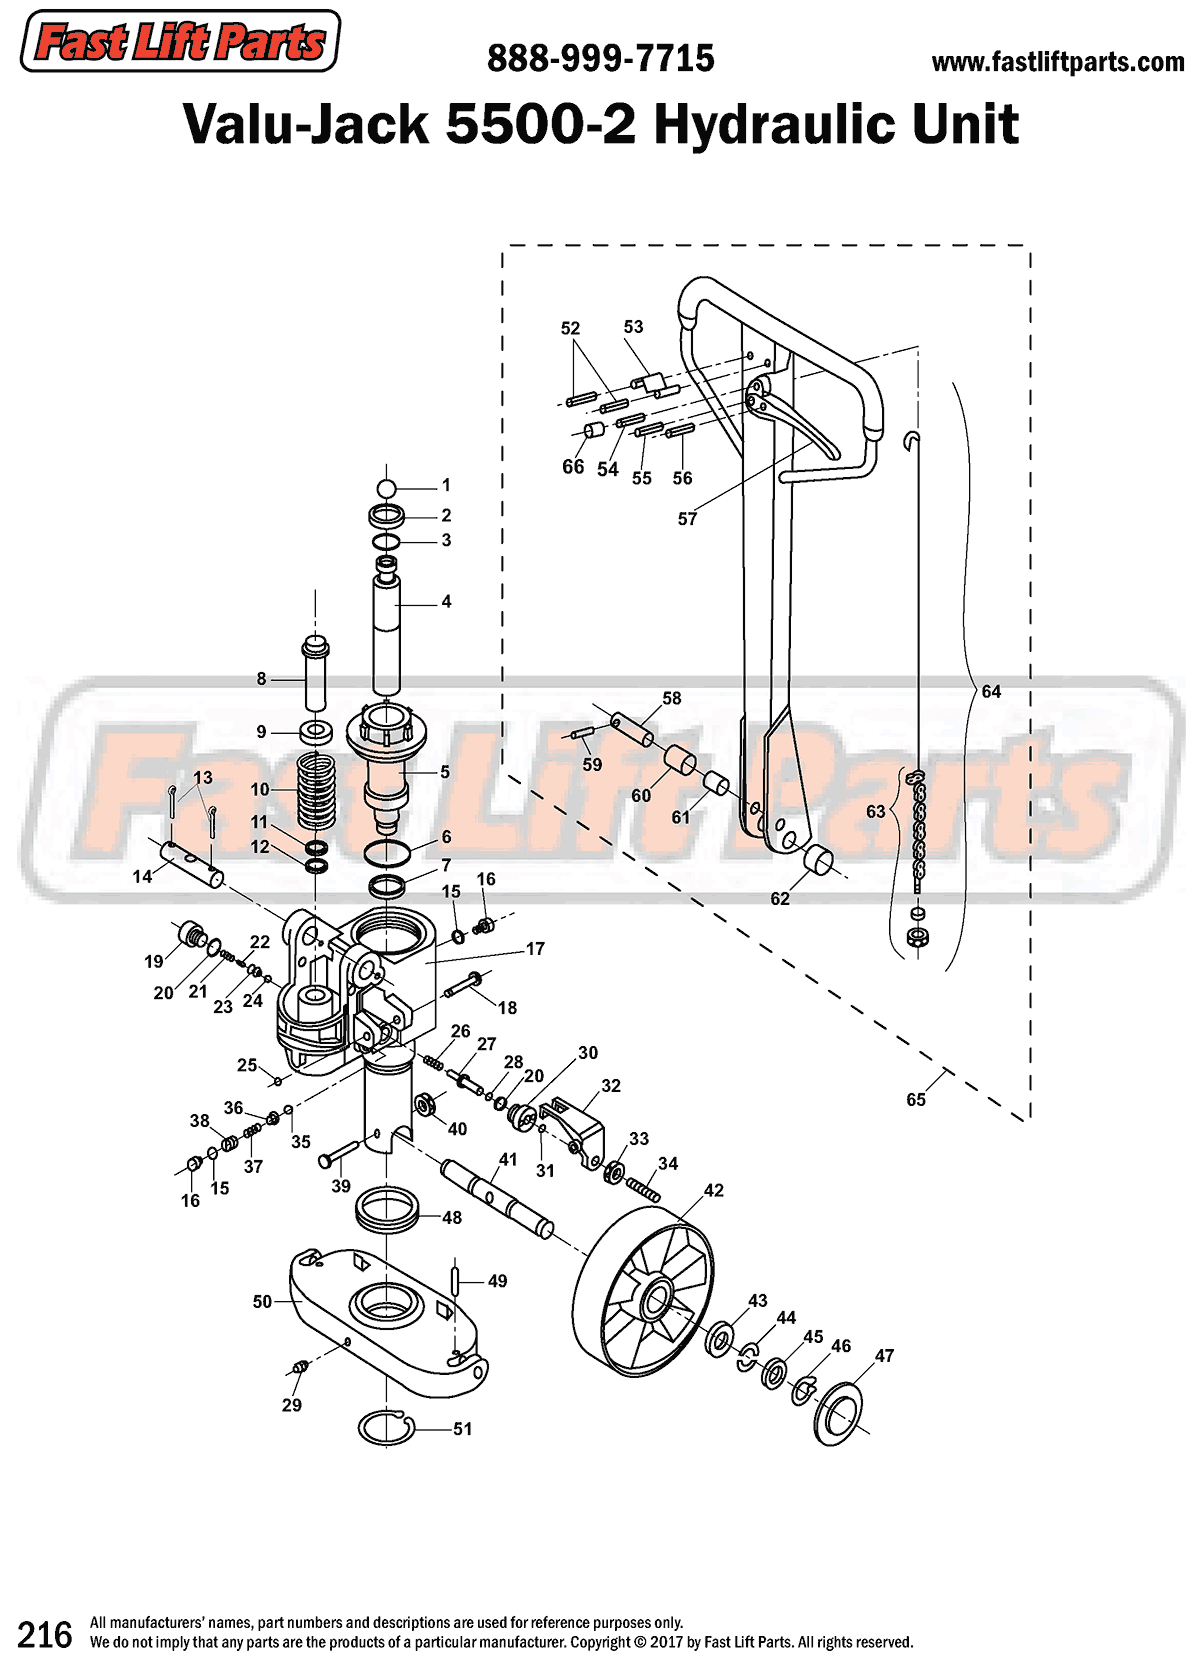 Valu-Jack 5500-2 Hydraulic Unit Line Drawing